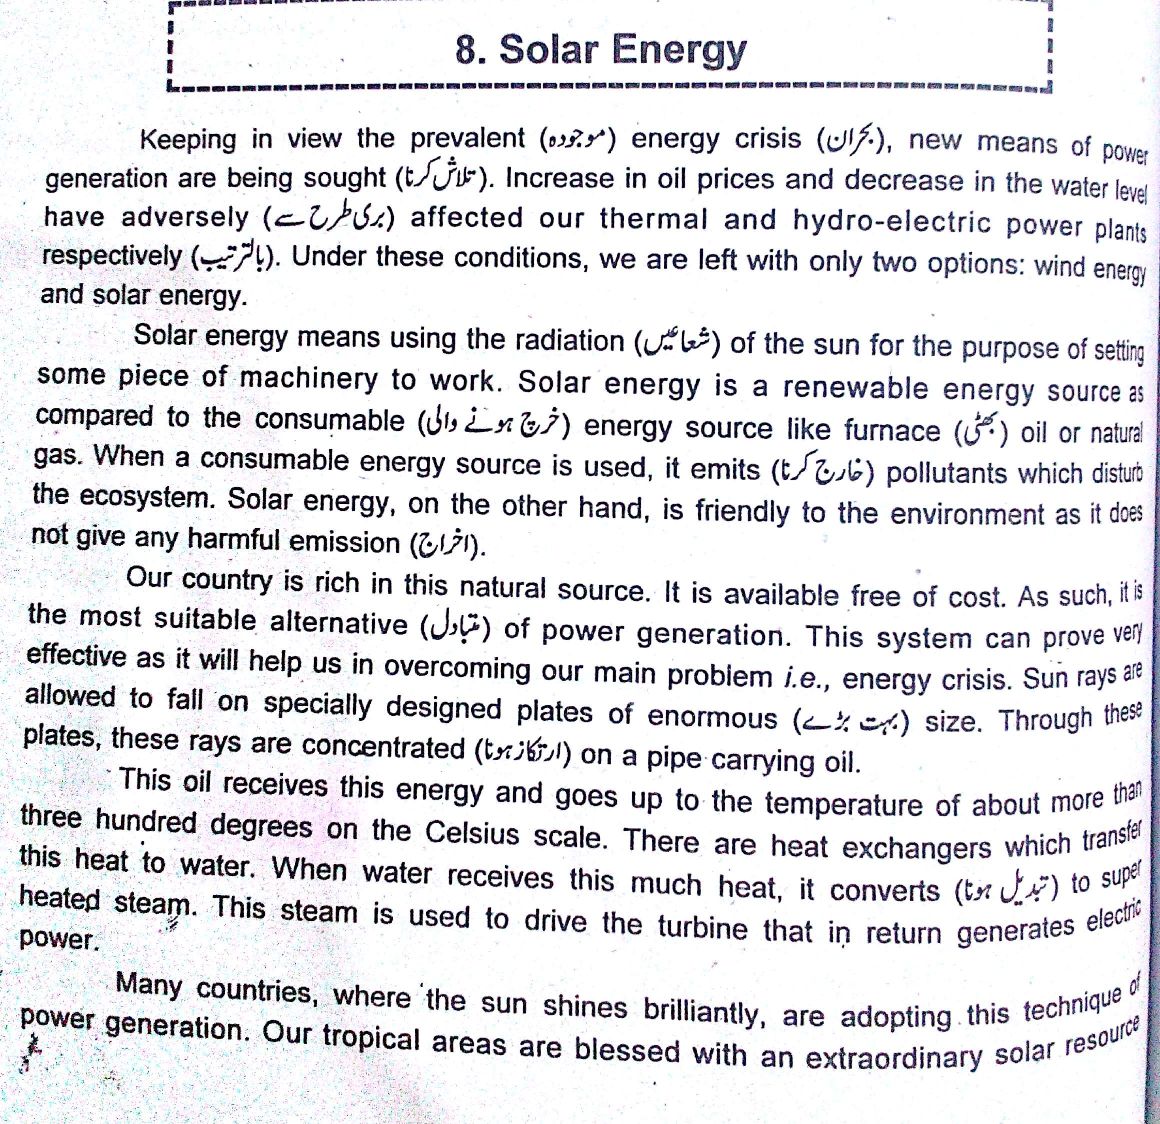 Essay on energy